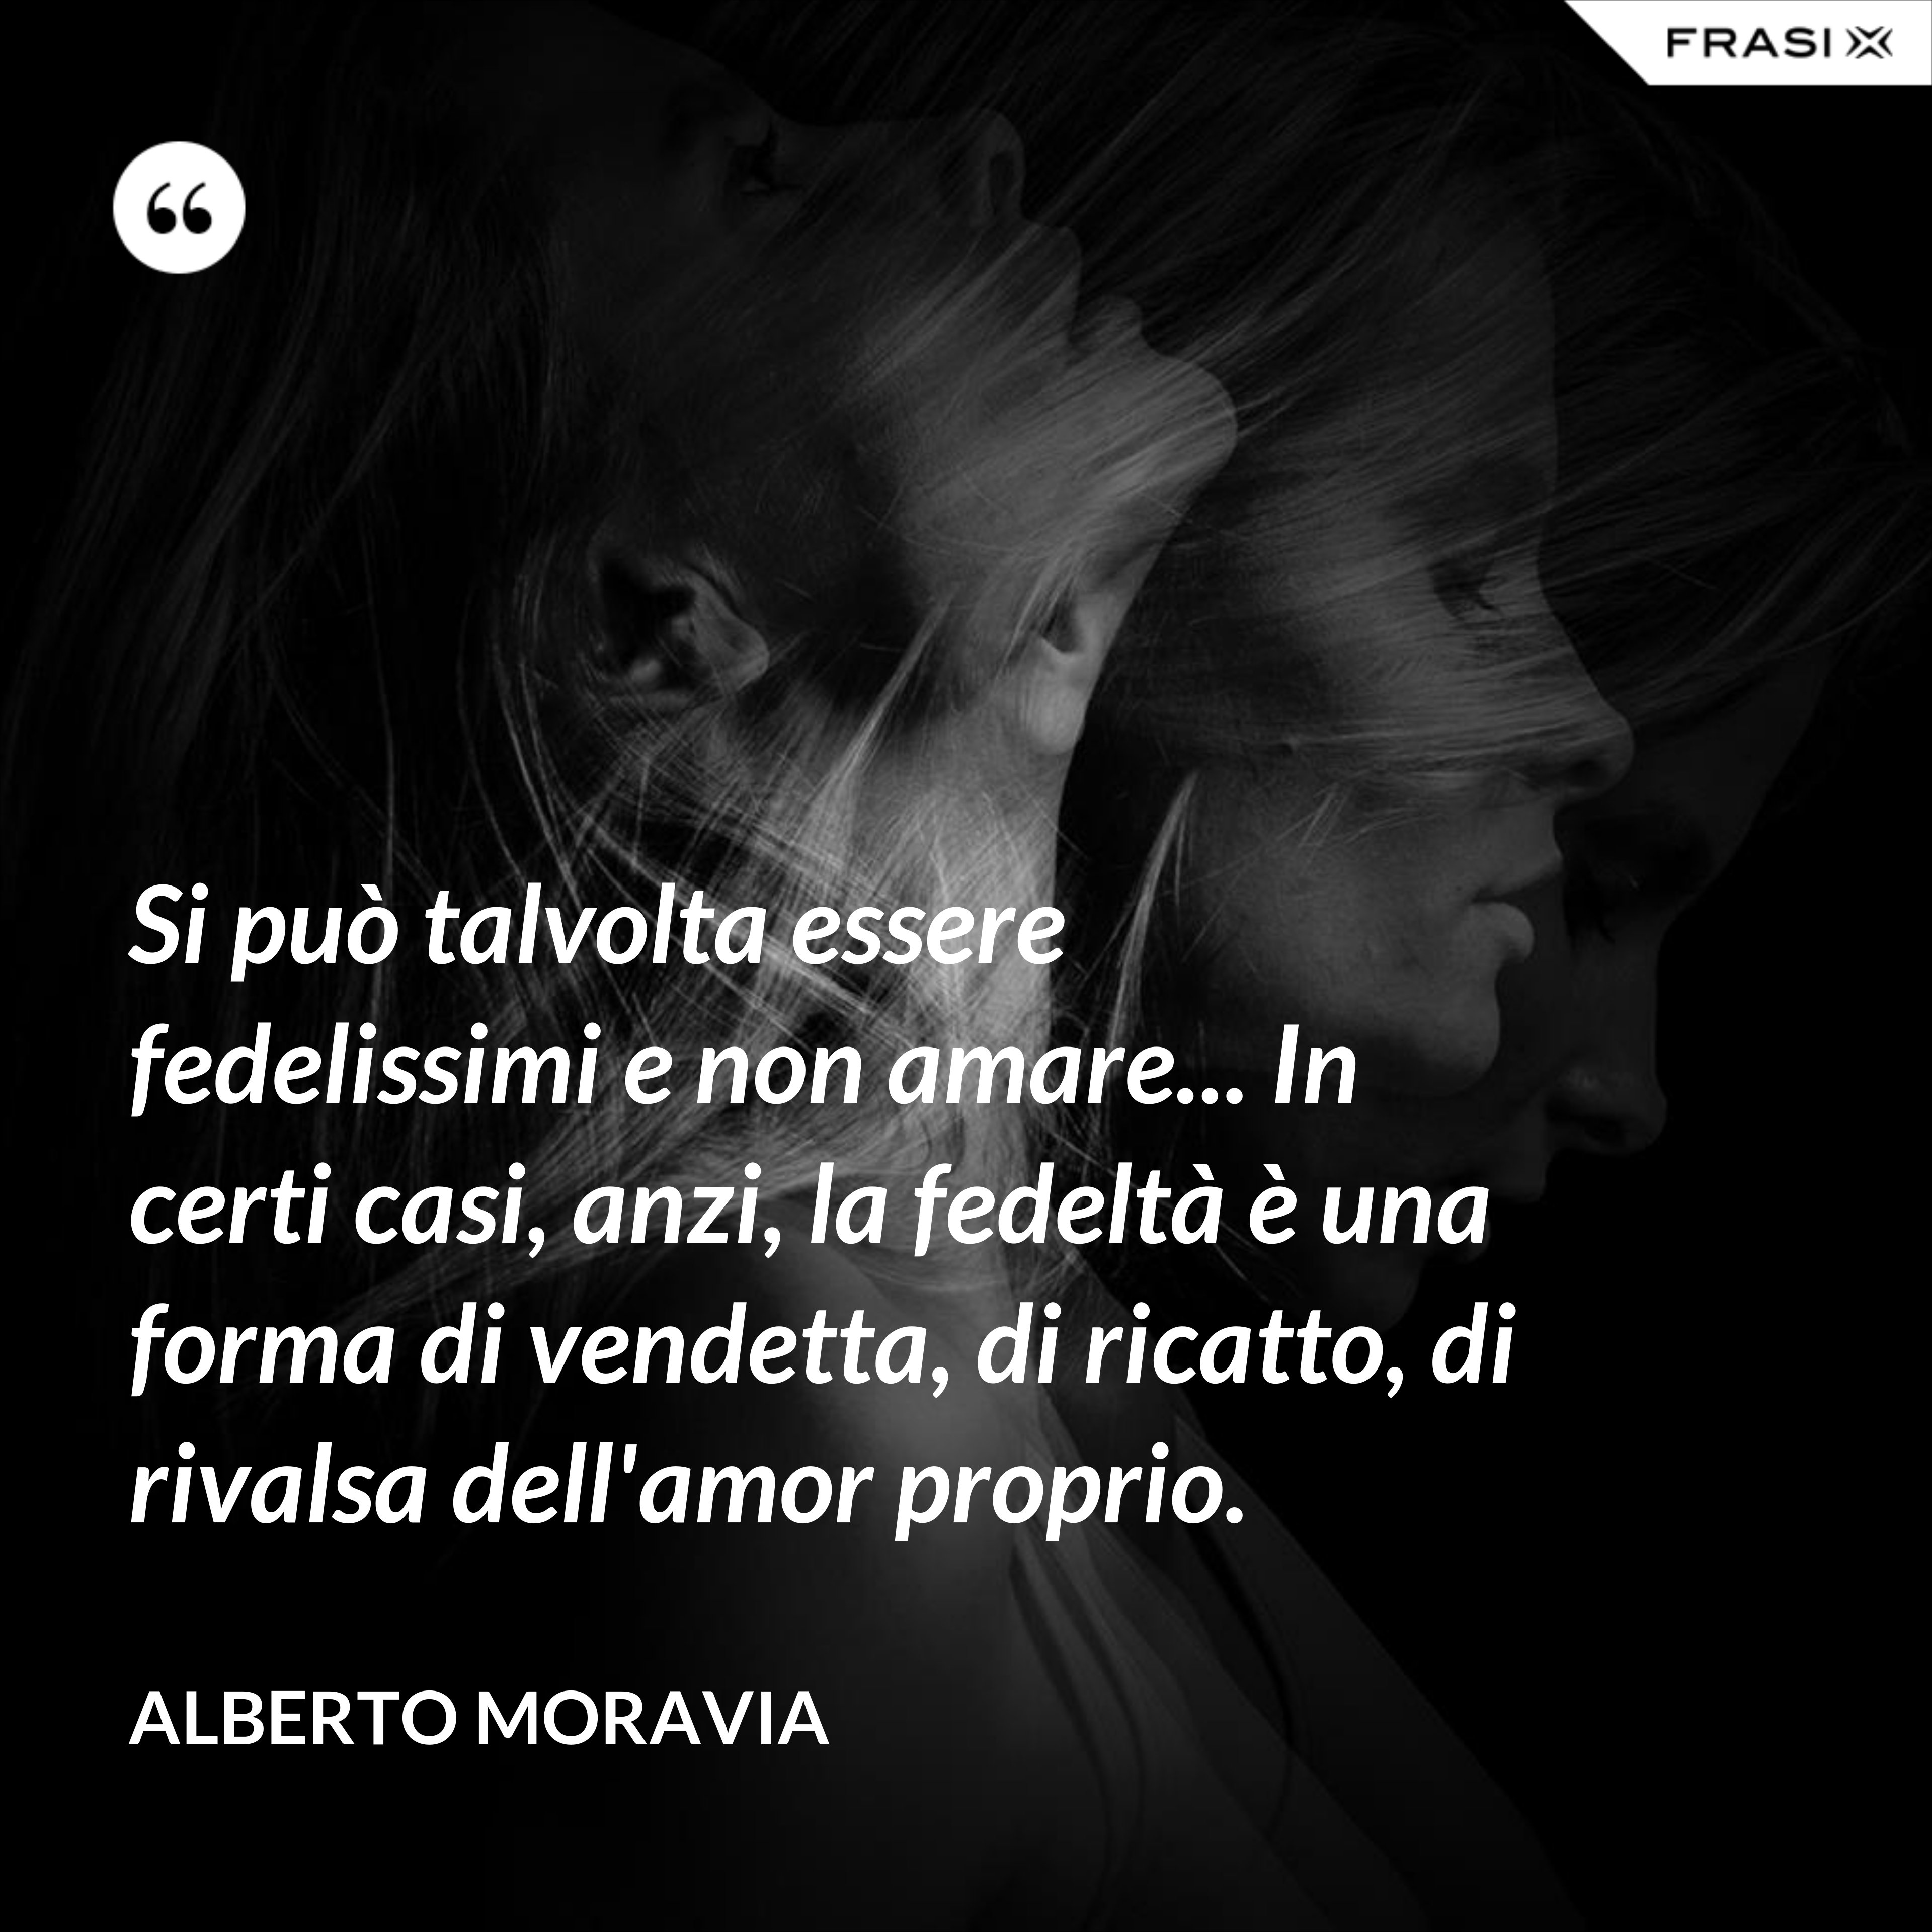 Si può talvolta essere fedelissimi e non amare... In certi casi, anzi, la fedeltà è una forma di vendetta, di ricatto, di rivalsa dell'amor proprio. - Alberto Moravia